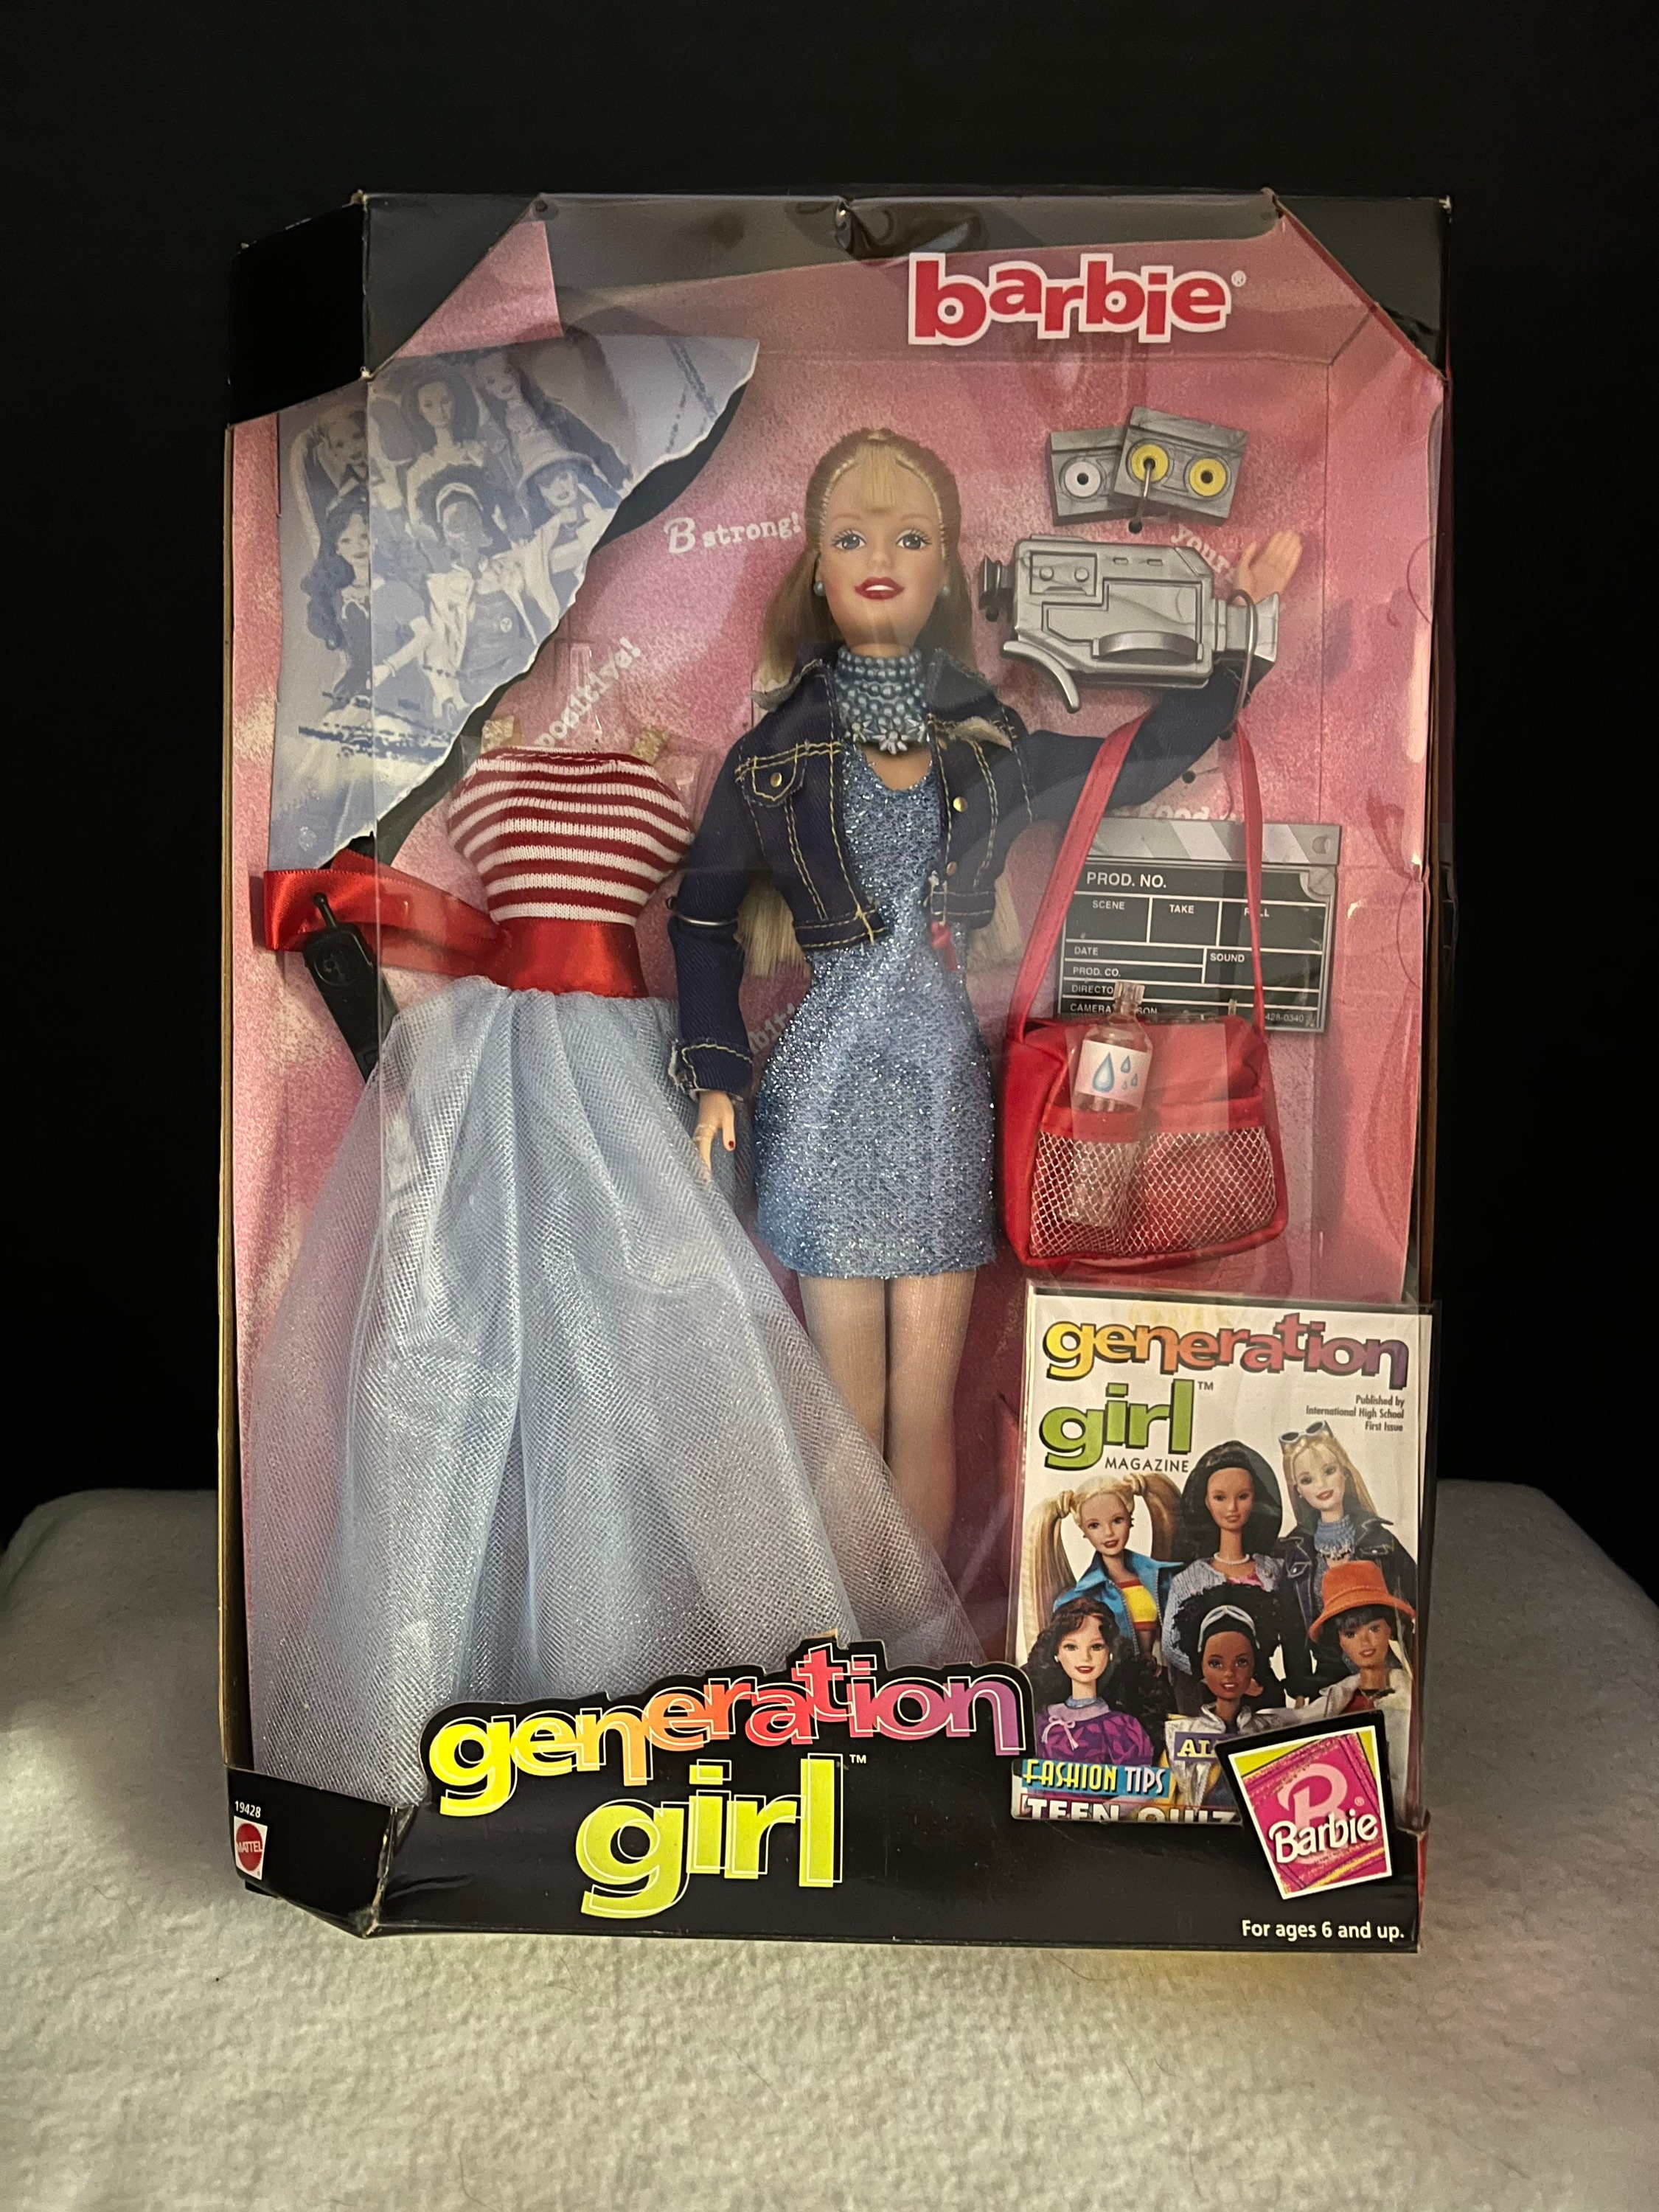 Jogos da Barbie de arrumar a casa da boneca Barbie girl 